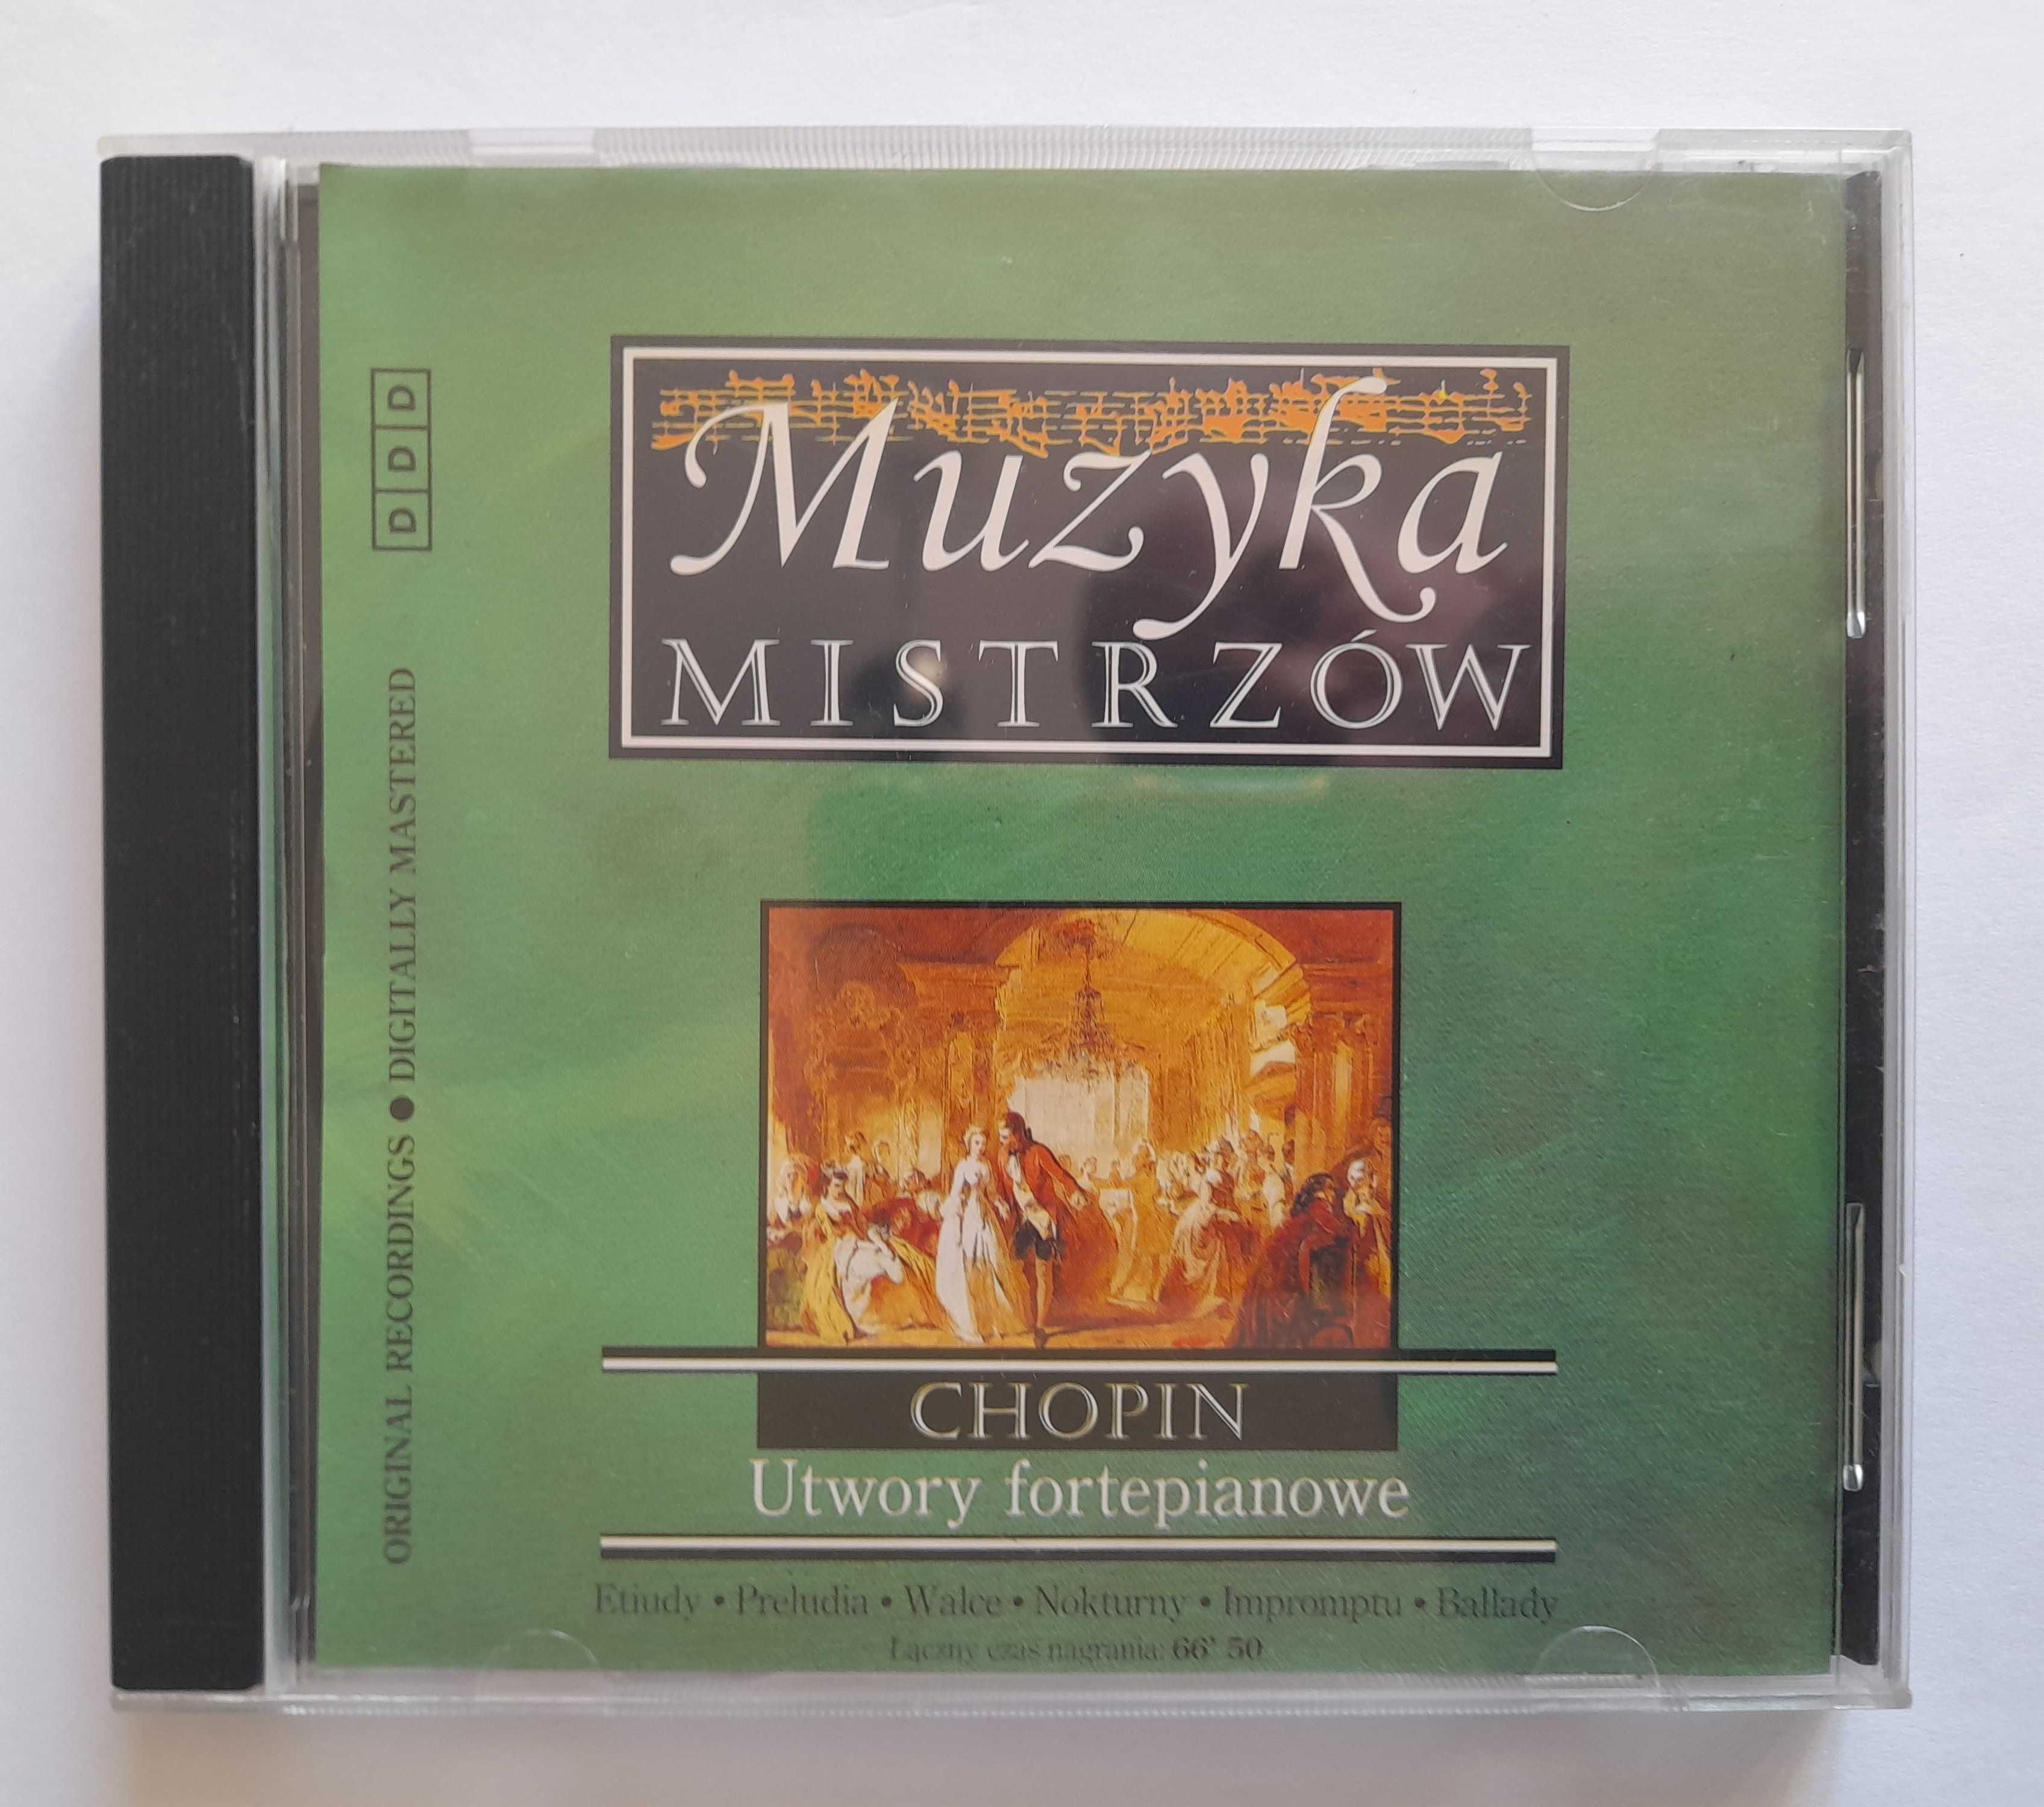 CD Muzyka Mistrzów. CHOPIN Utwory fortepianowe